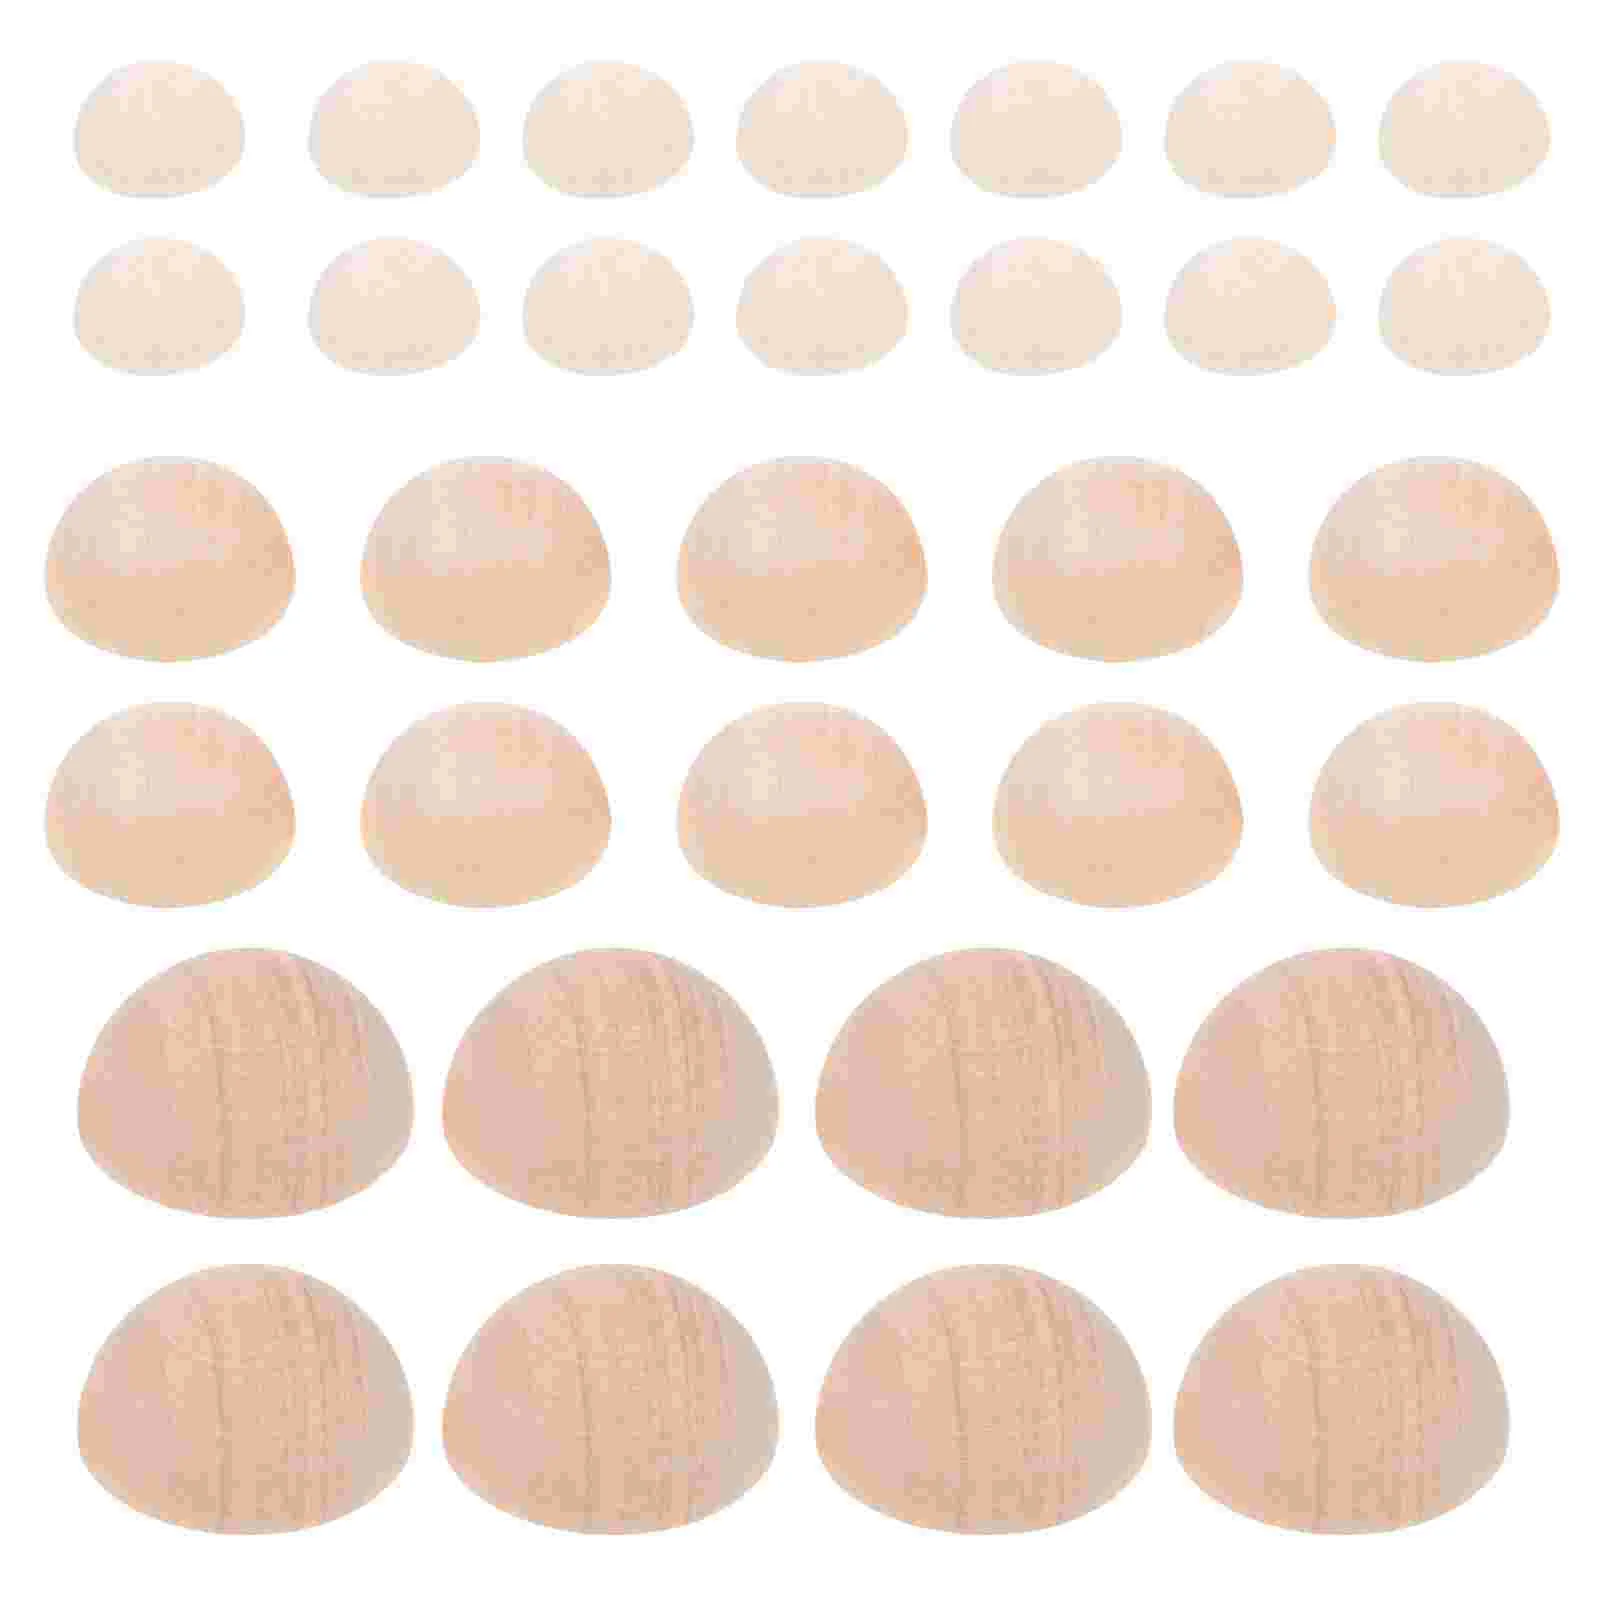 

150Pcs Half Round Wood Beads Wooden Half Balls Unfinished Split Half Round Beads